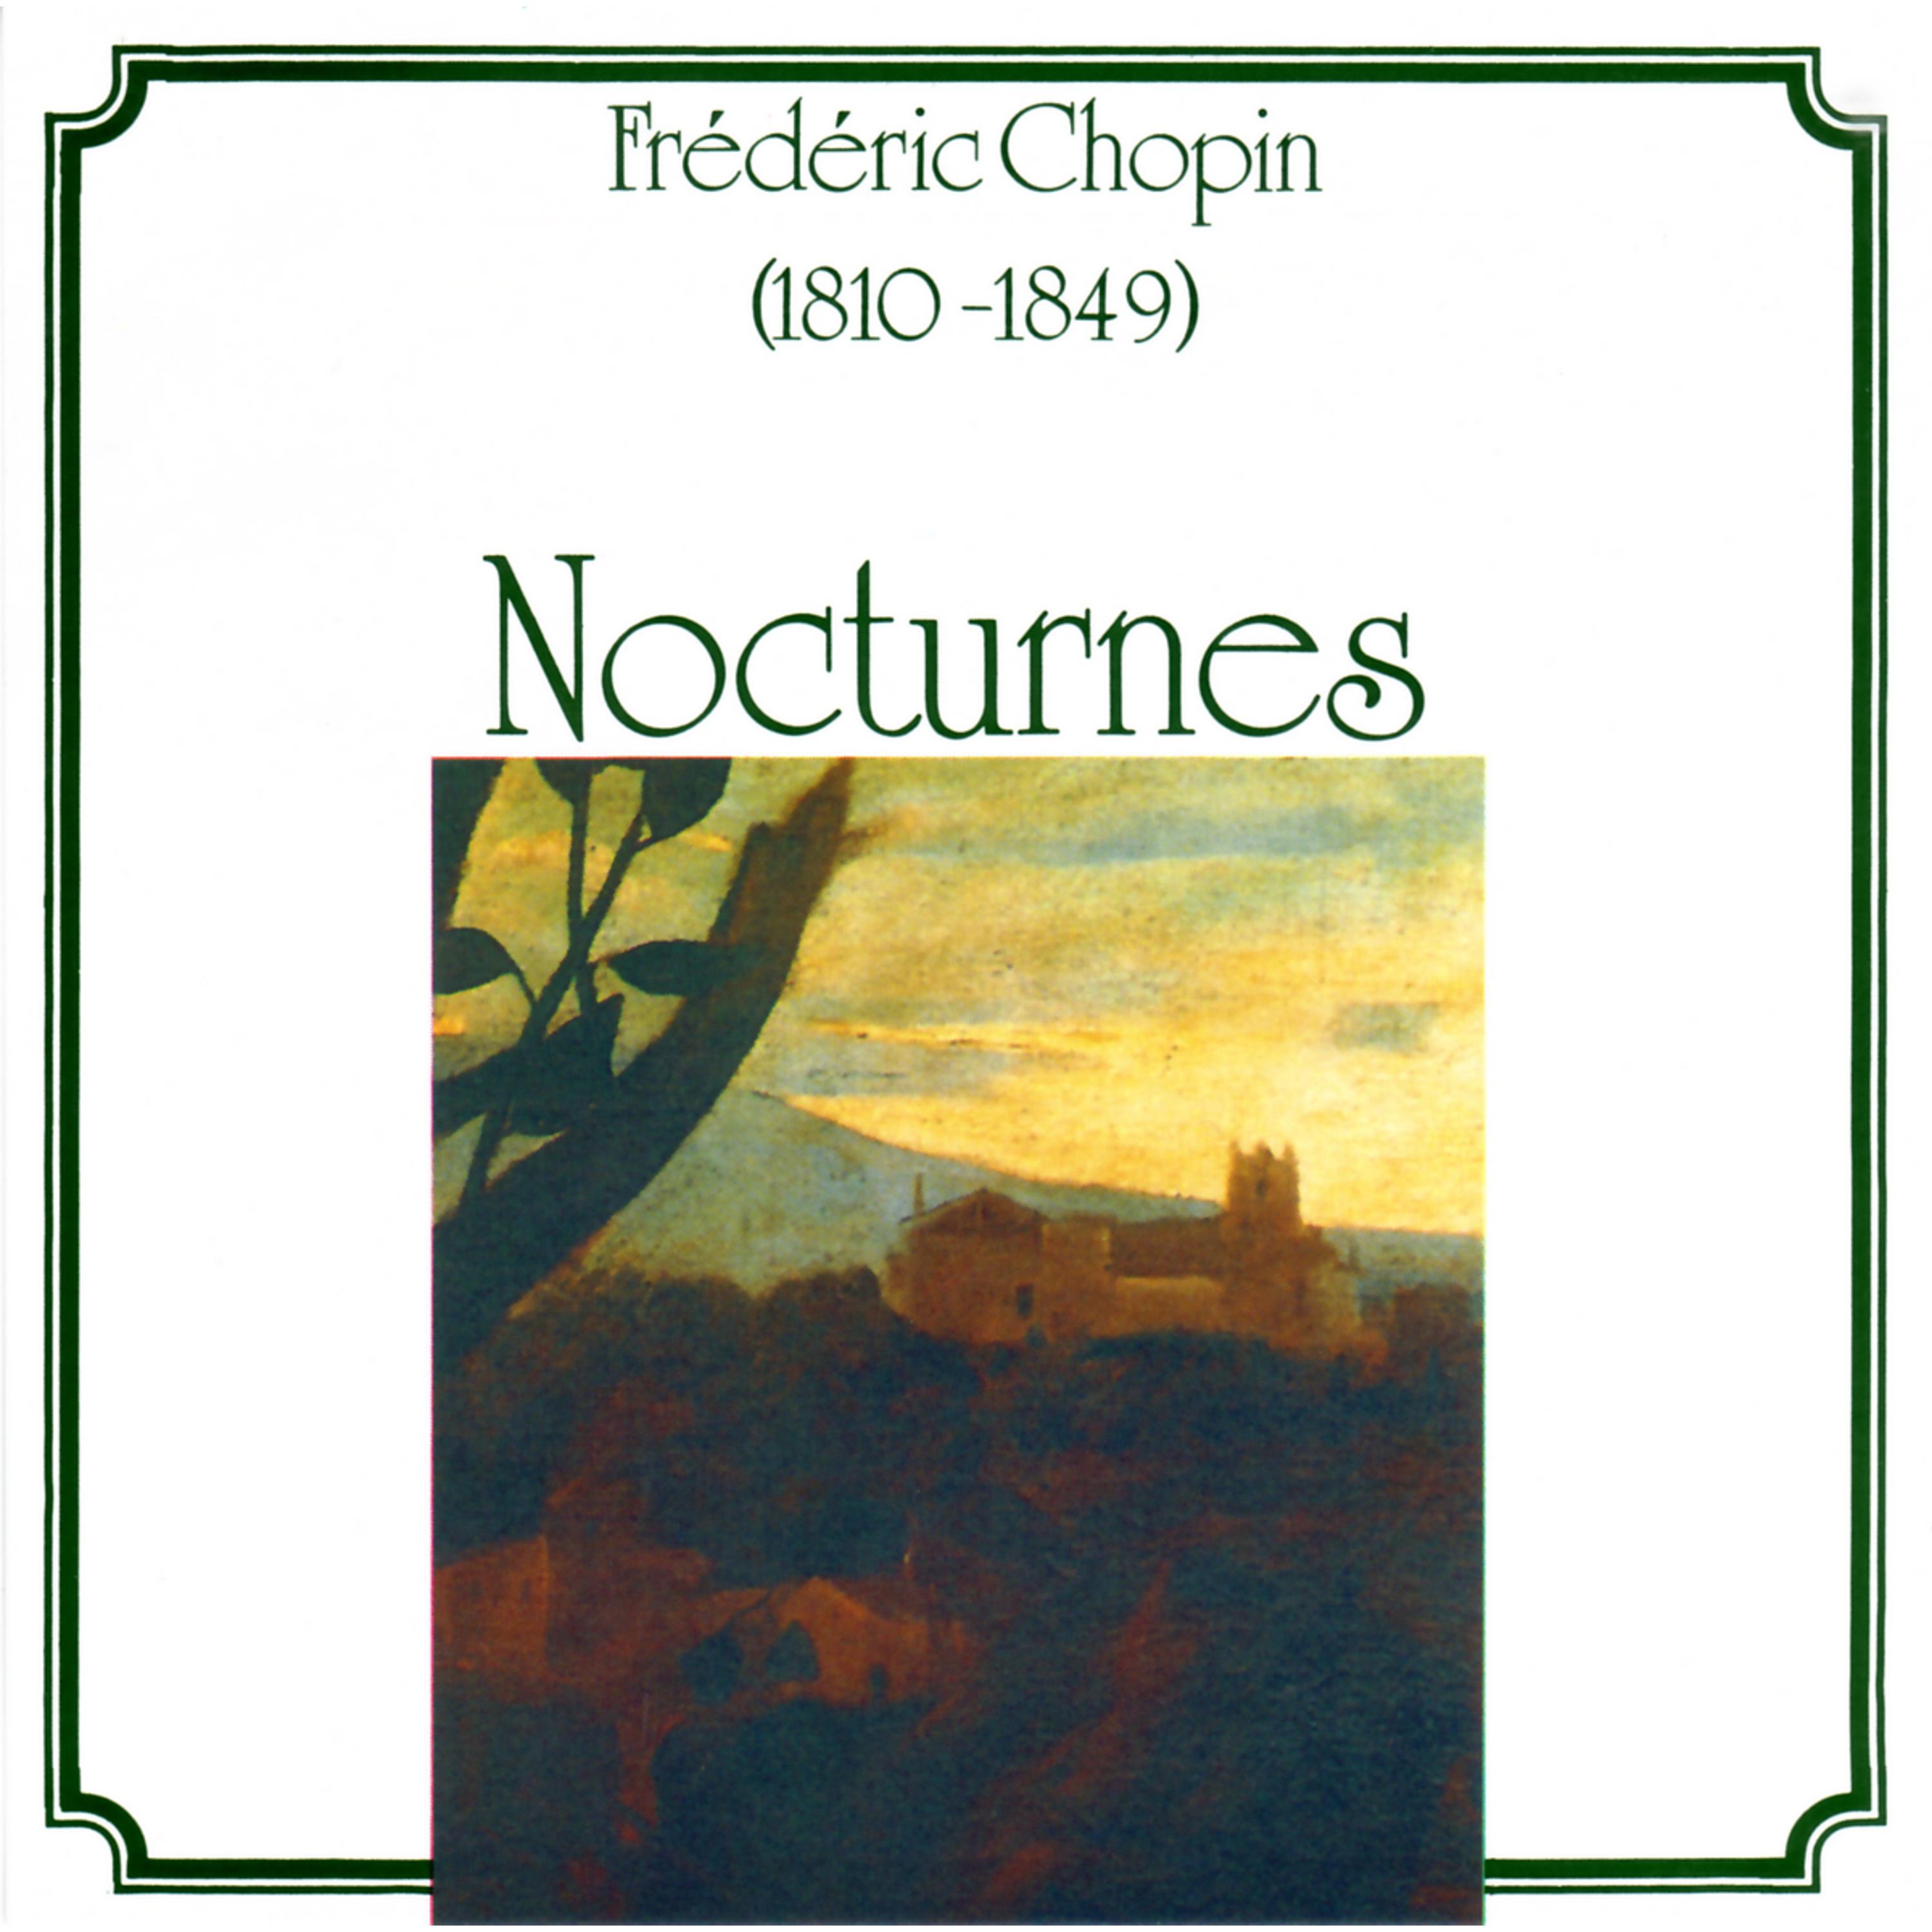 Nocturne in G Major, Op. 37, No. 2: Nocturne No. 12